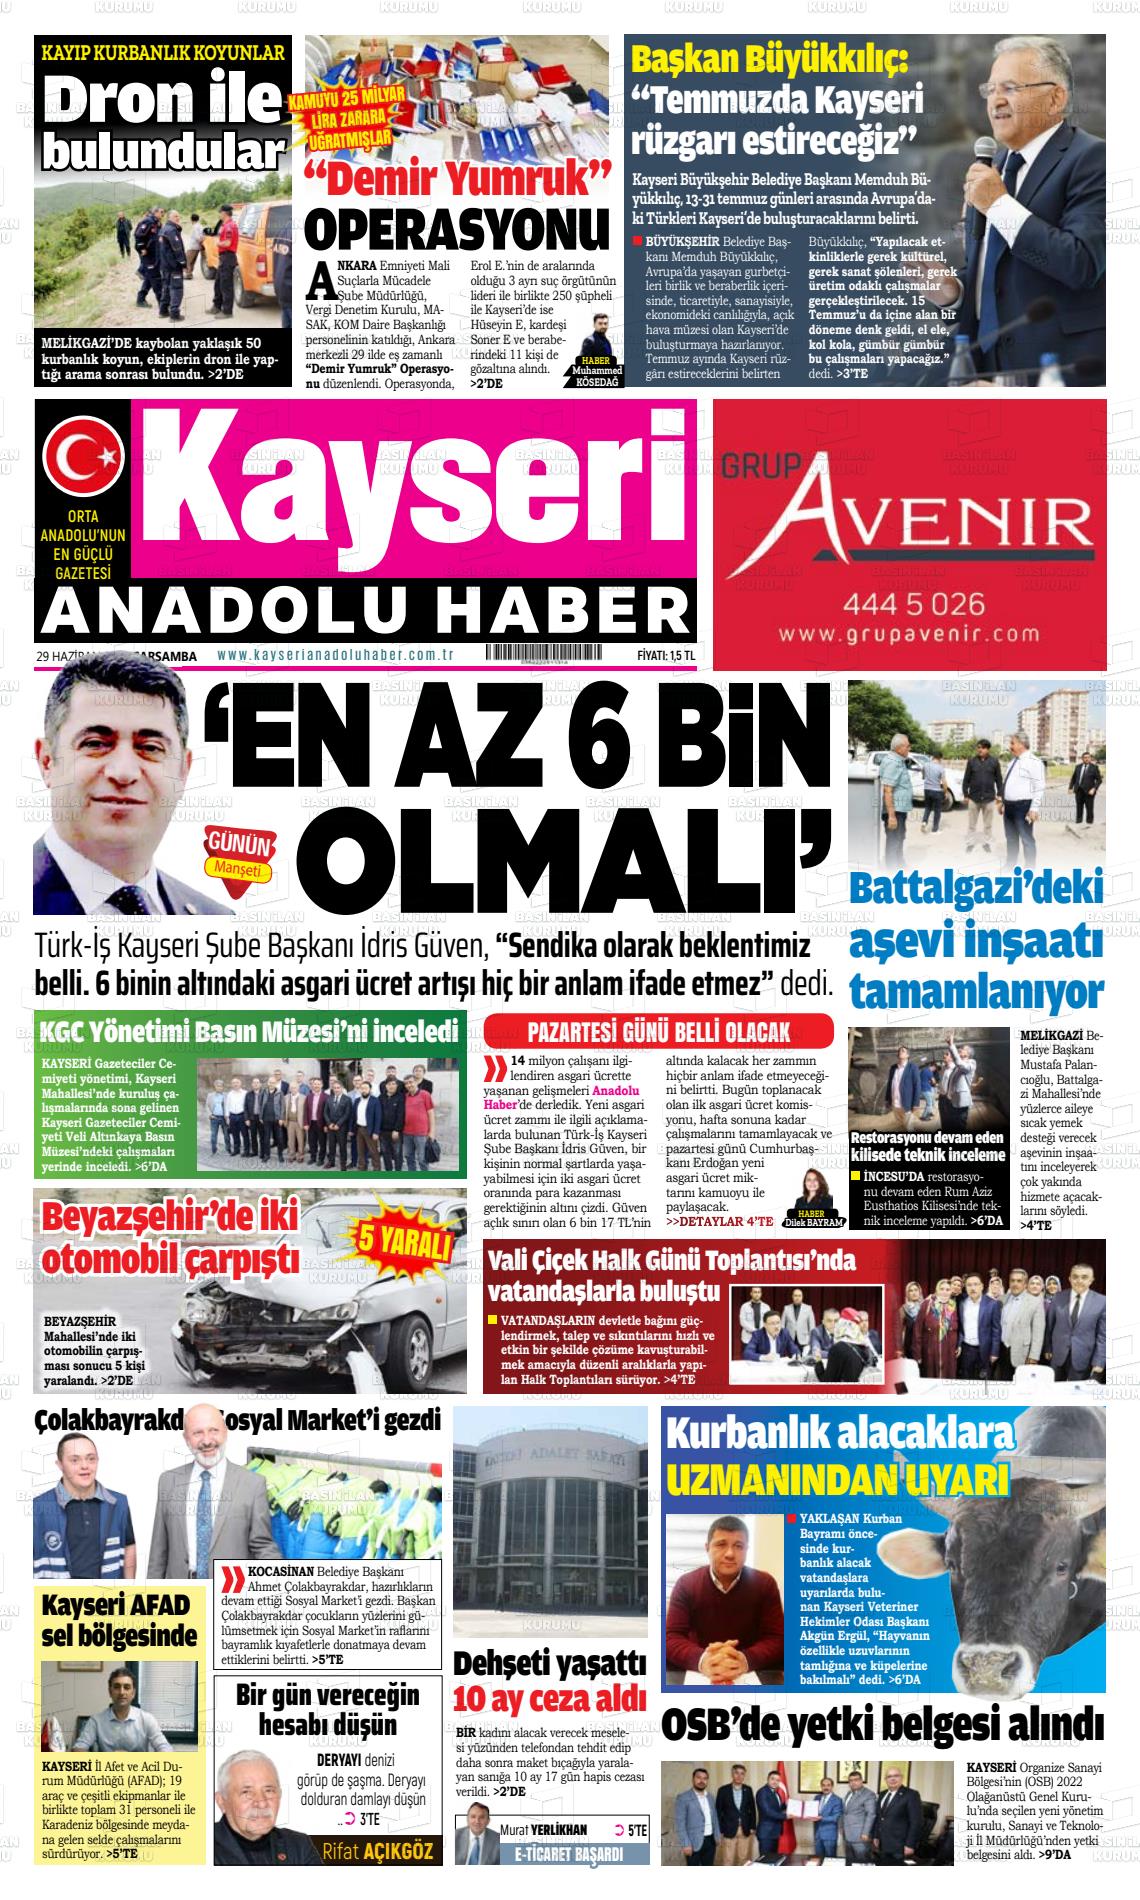 29 Haziran 2022 Kayseri Anadolu Haber Gazete Manşeti